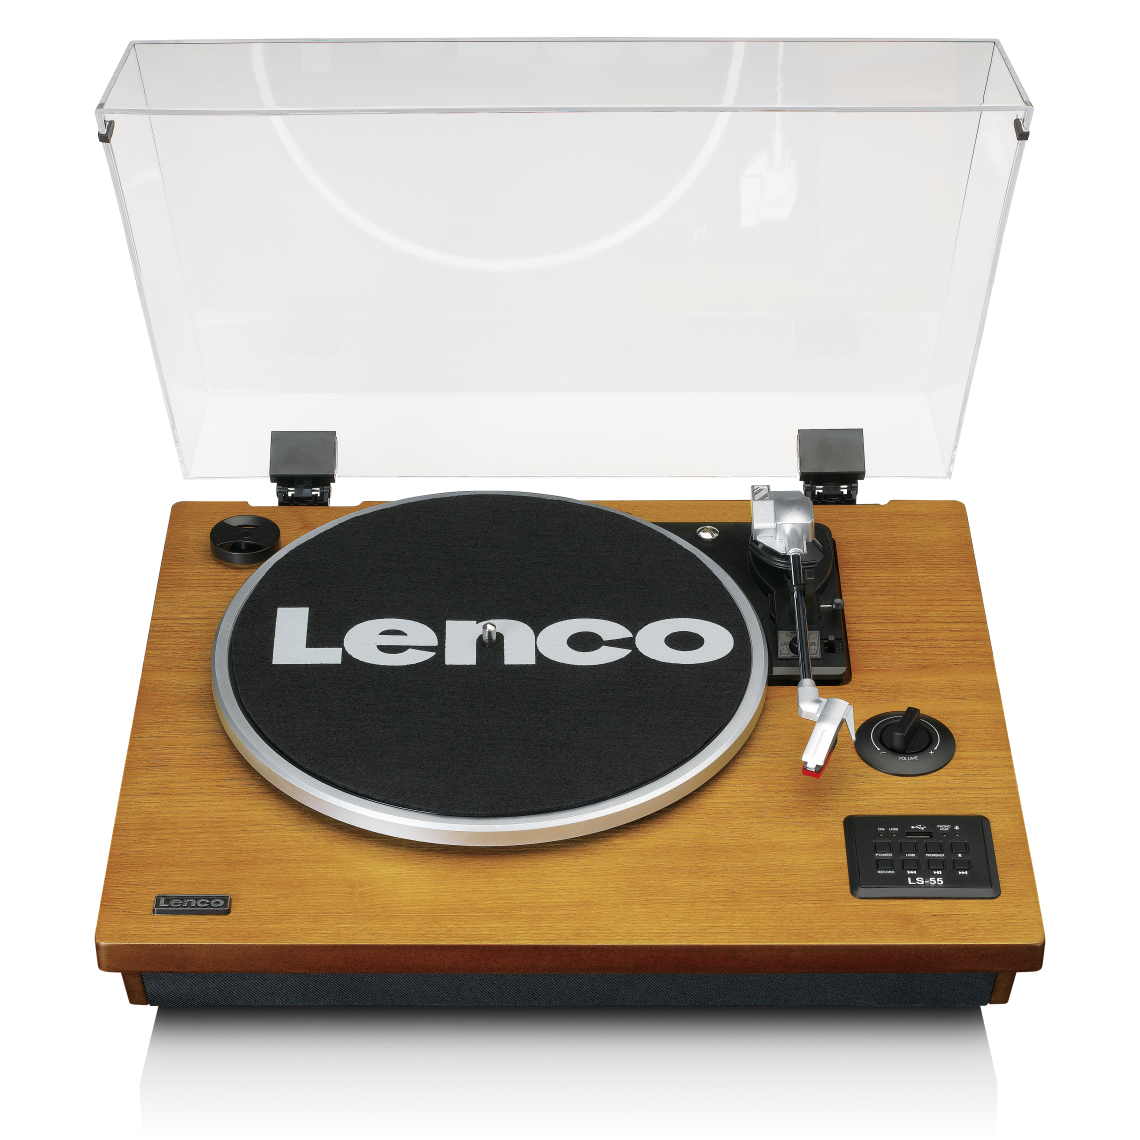 Lenco - Platine vinyle avec BT, USB, MP3, haut-parleurs LS-55WA Bois - Platine